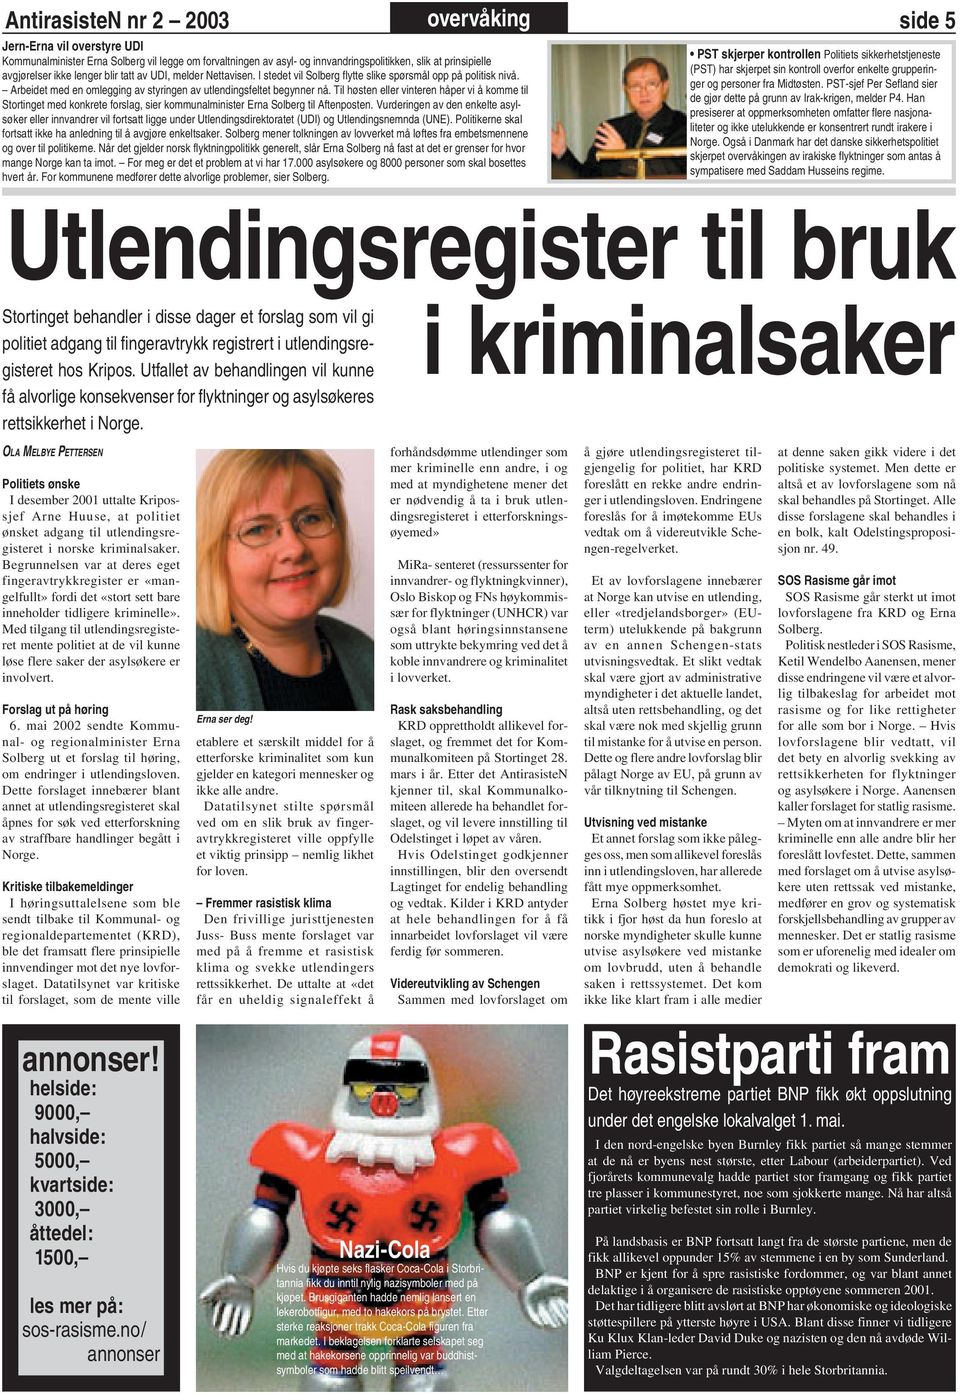 Til høsten eller vinteren håper vi å komme til Stortinget med konkrete forslag, sier kommunalminister Erna Solberg til Aftenposten.